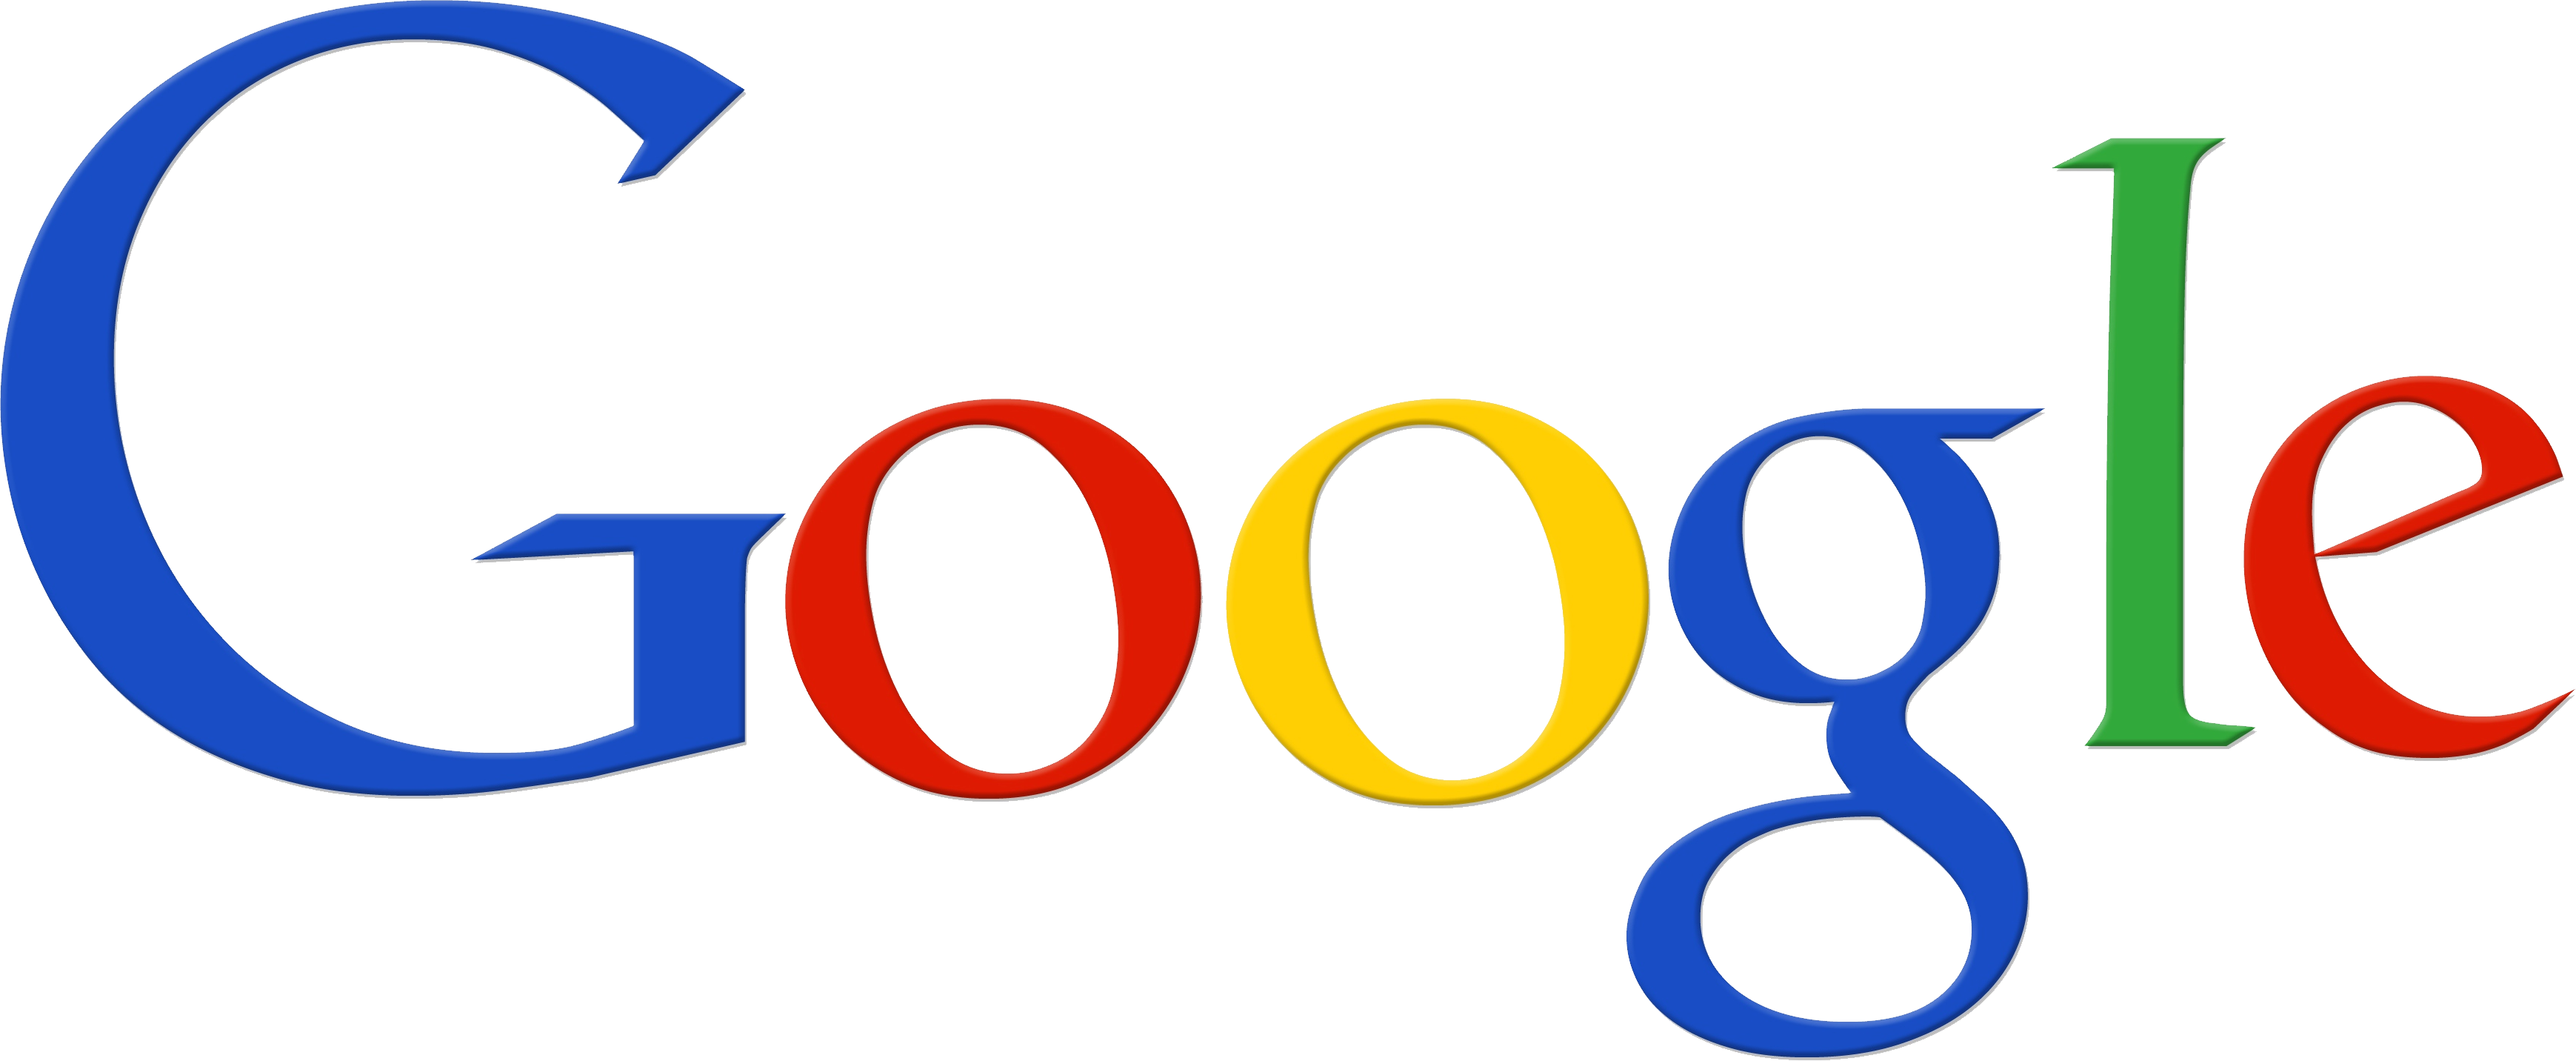 Brand Number Google Logo PNG